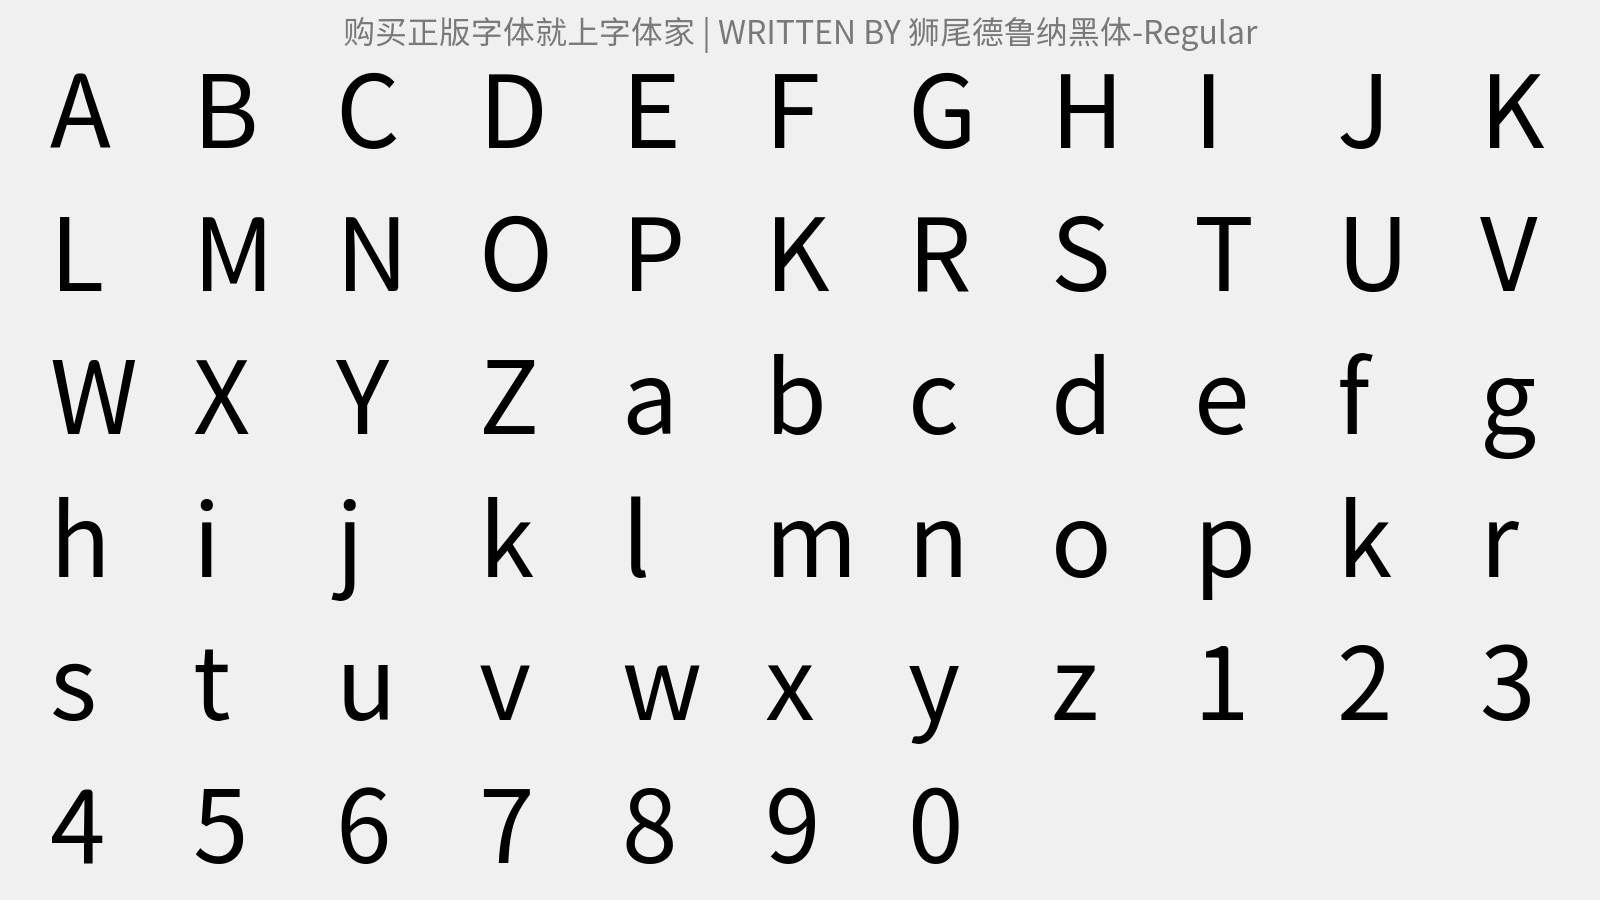 狮尾德鲁纳黑体-Regular - 大写字母/小写字母/数字